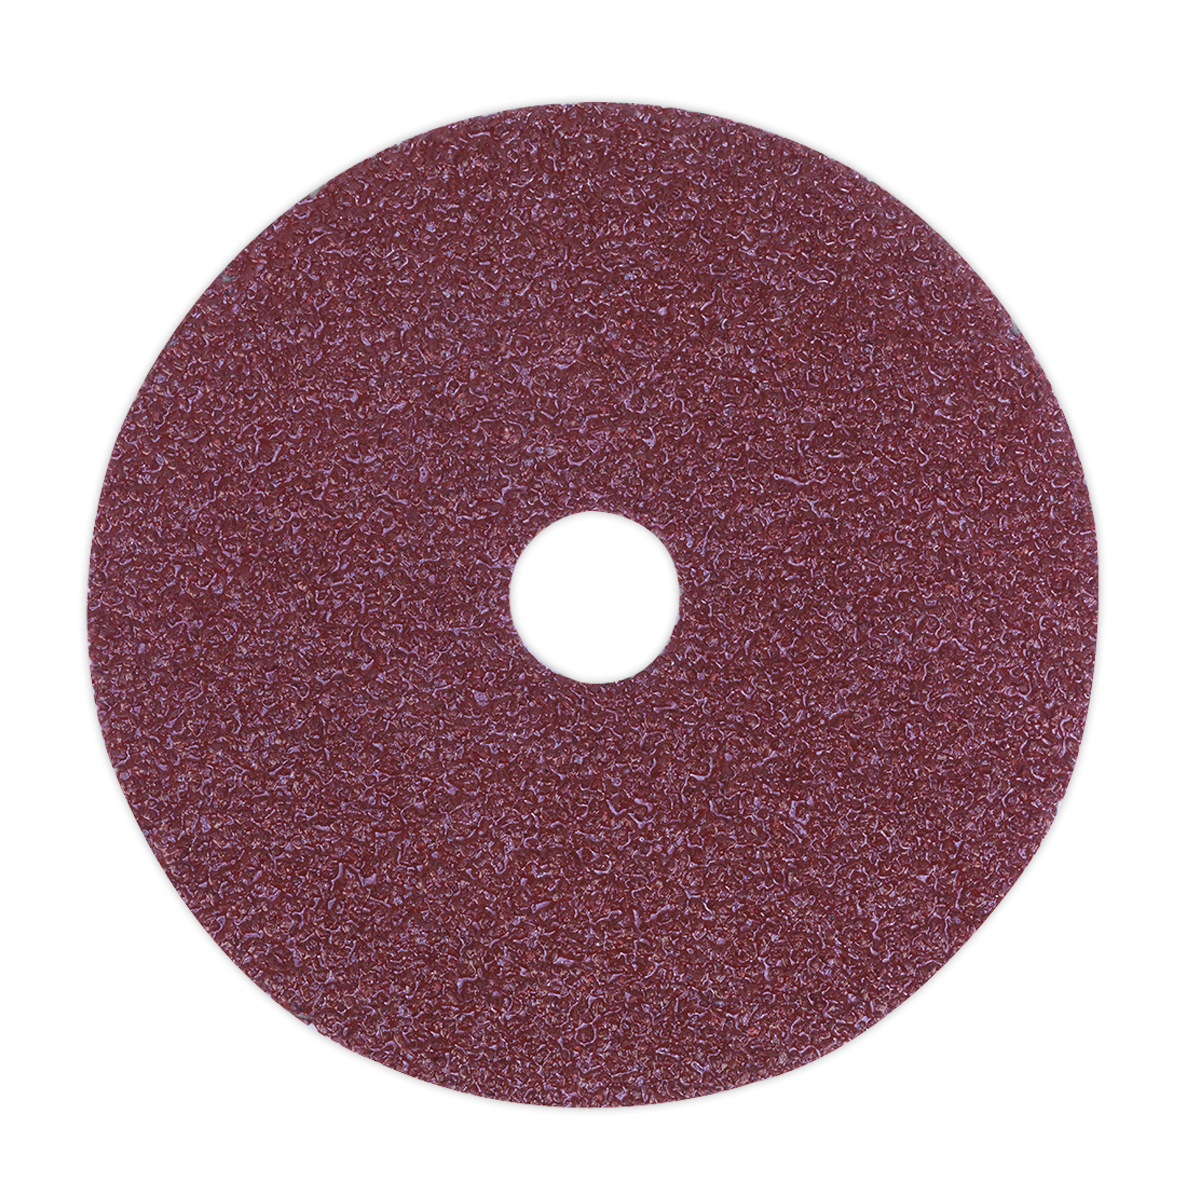 Sealey Sanding Disc Fibre Backed Ø100mm 36Grit Pack of 25